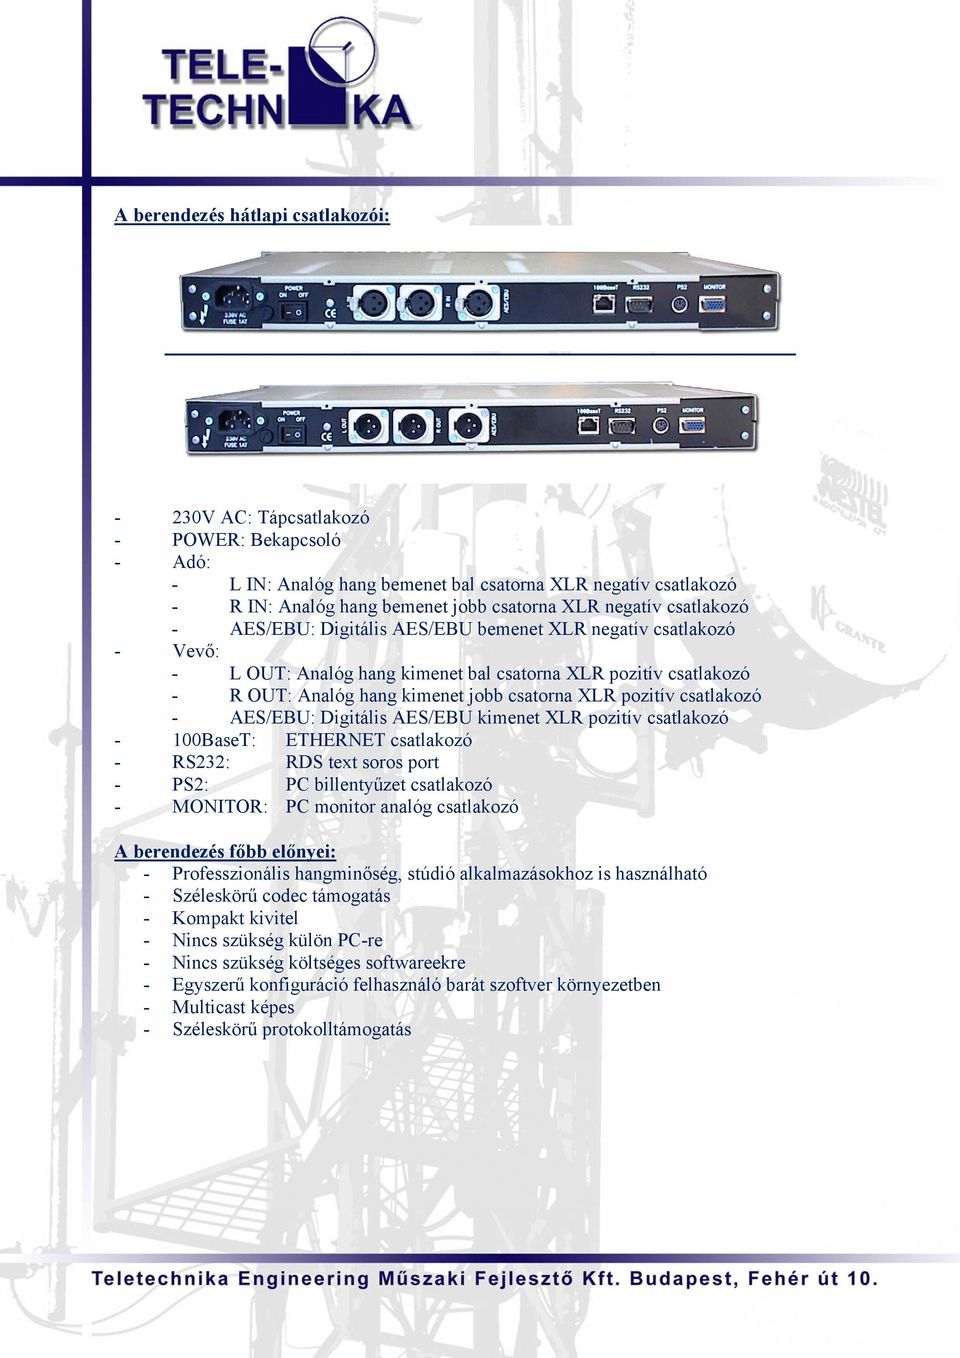 pozitív csatlakozó - AES/EBU: Digitális AES/EBU kimenet XLR pozitív csatlakozó - 100BaseT: ETHERNET csatlakozó - RS232: RDS text soros port - PS2: PC billentyűzet csatlakozó - MONITOR: PC monitor